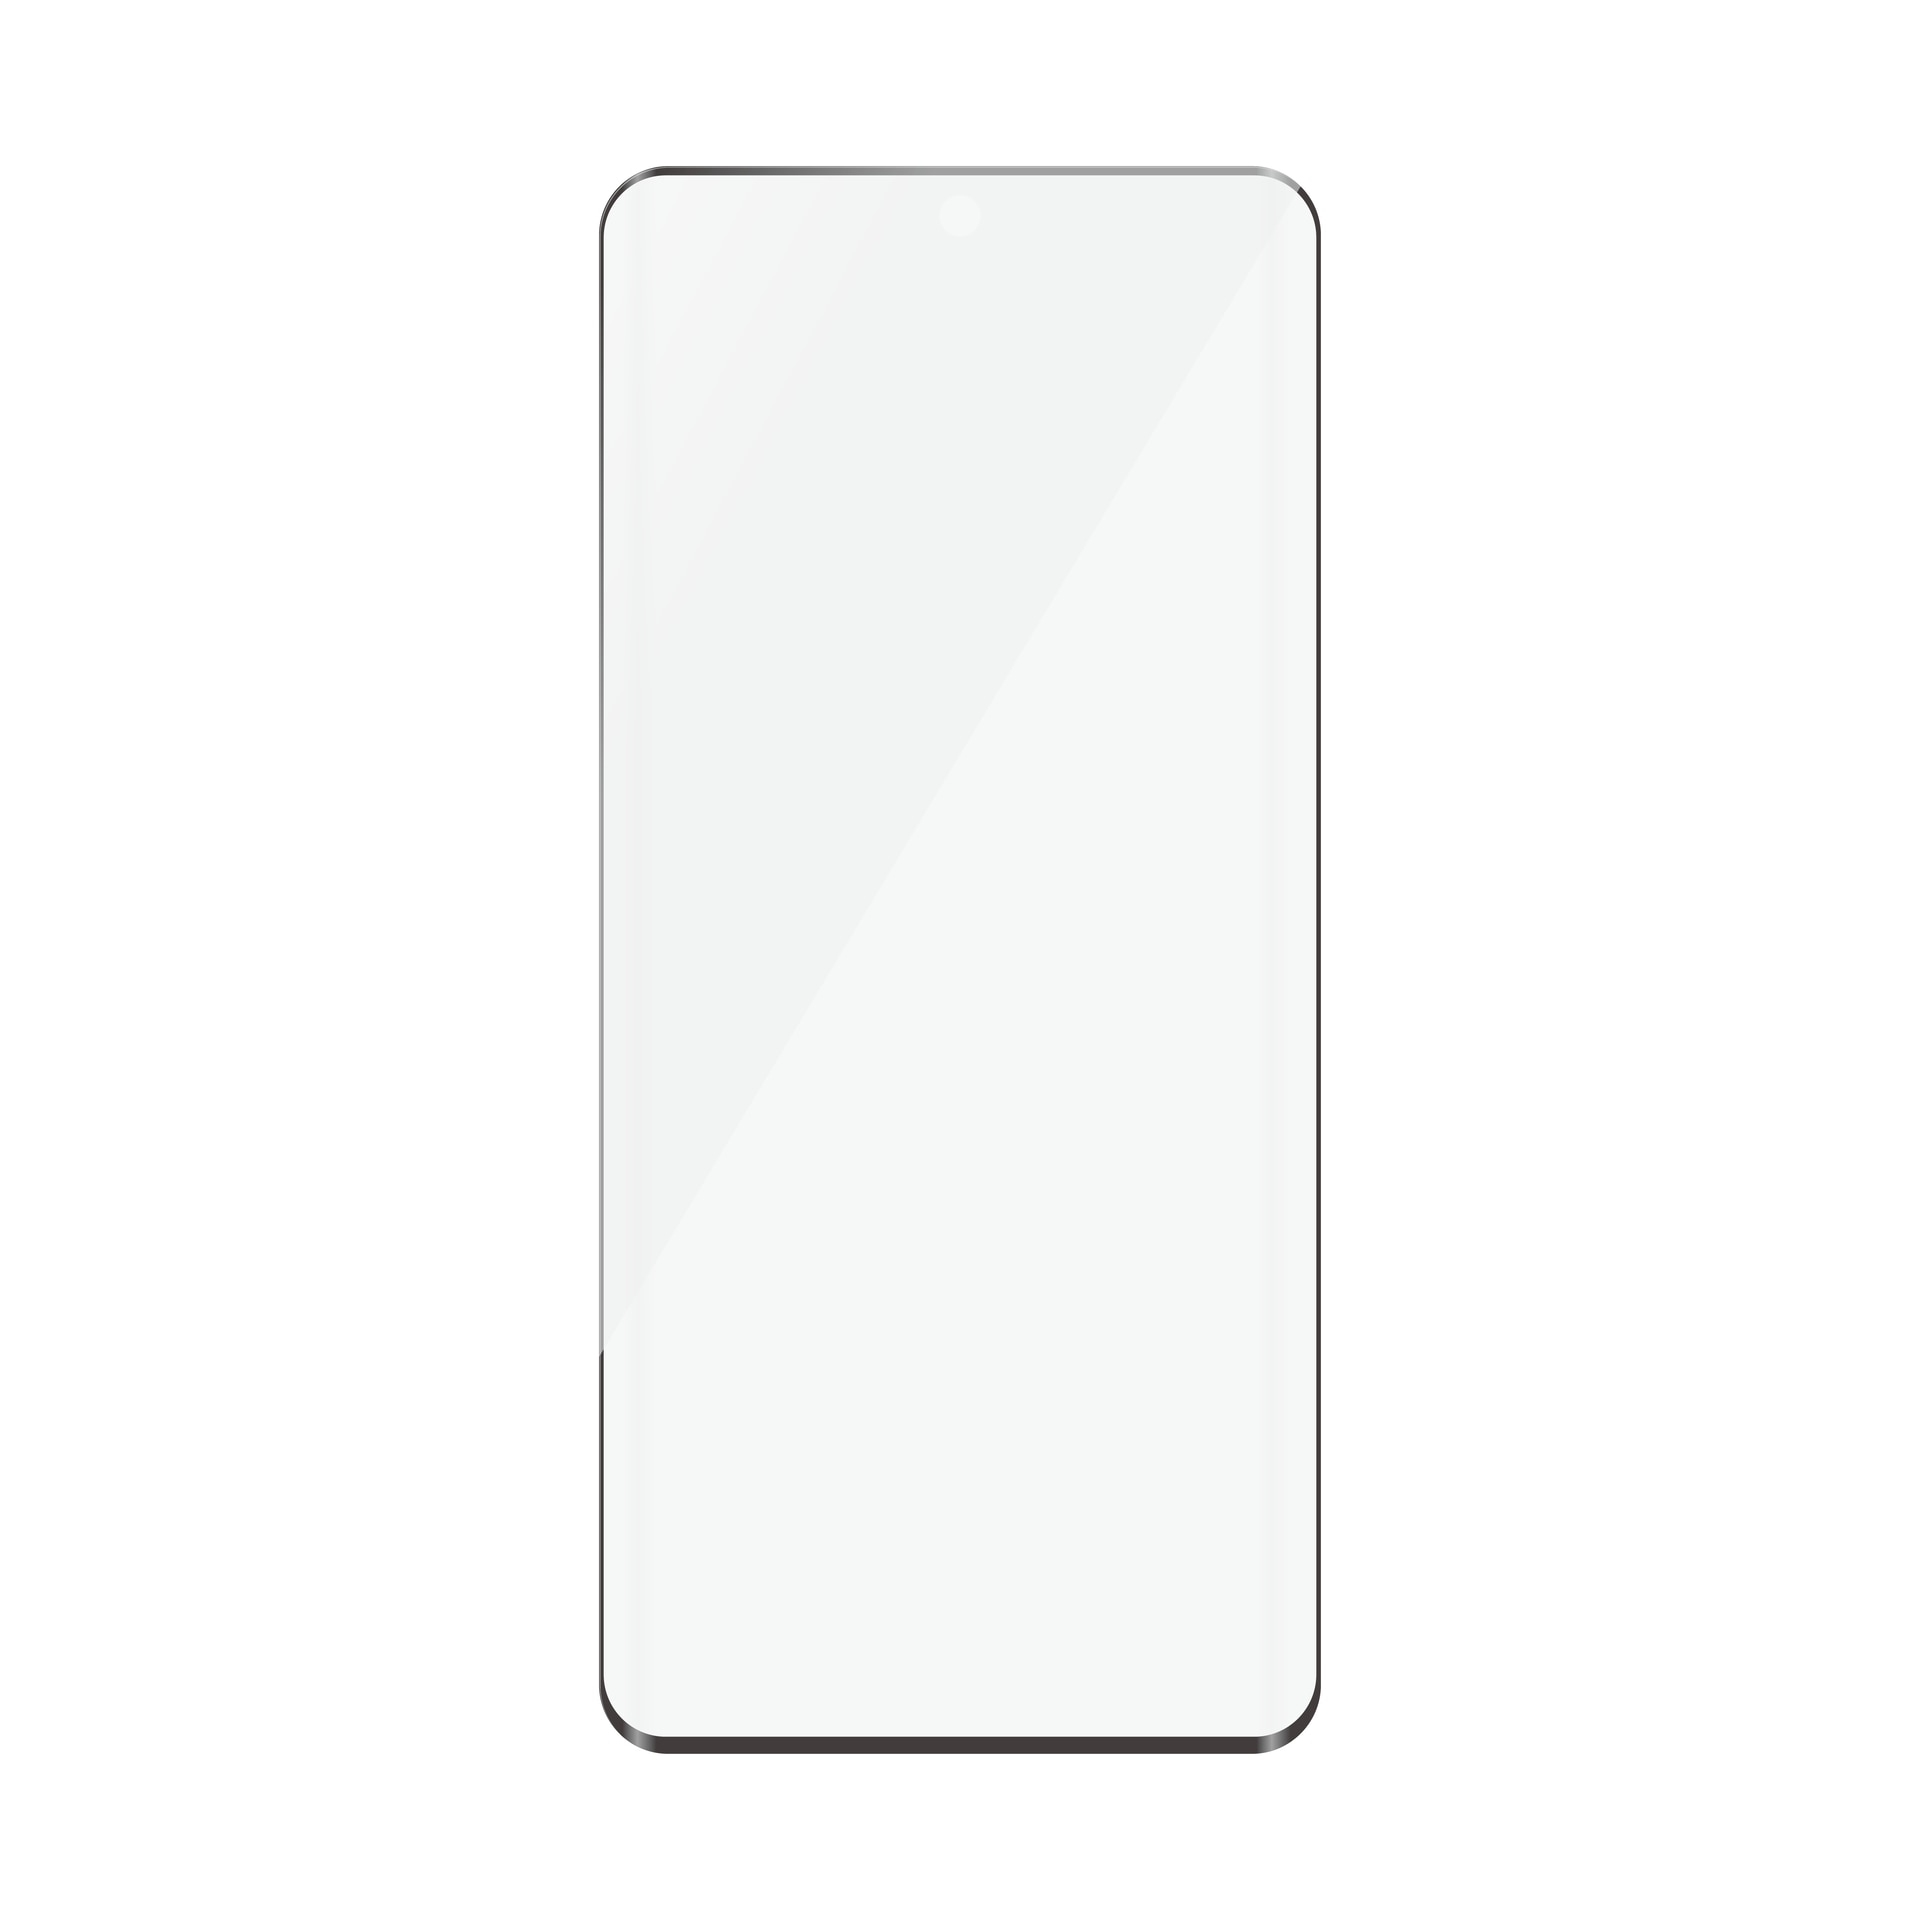 Displayschutzglas »Screen Protector«, für OnePlus 12R-OnePlus Ace 3